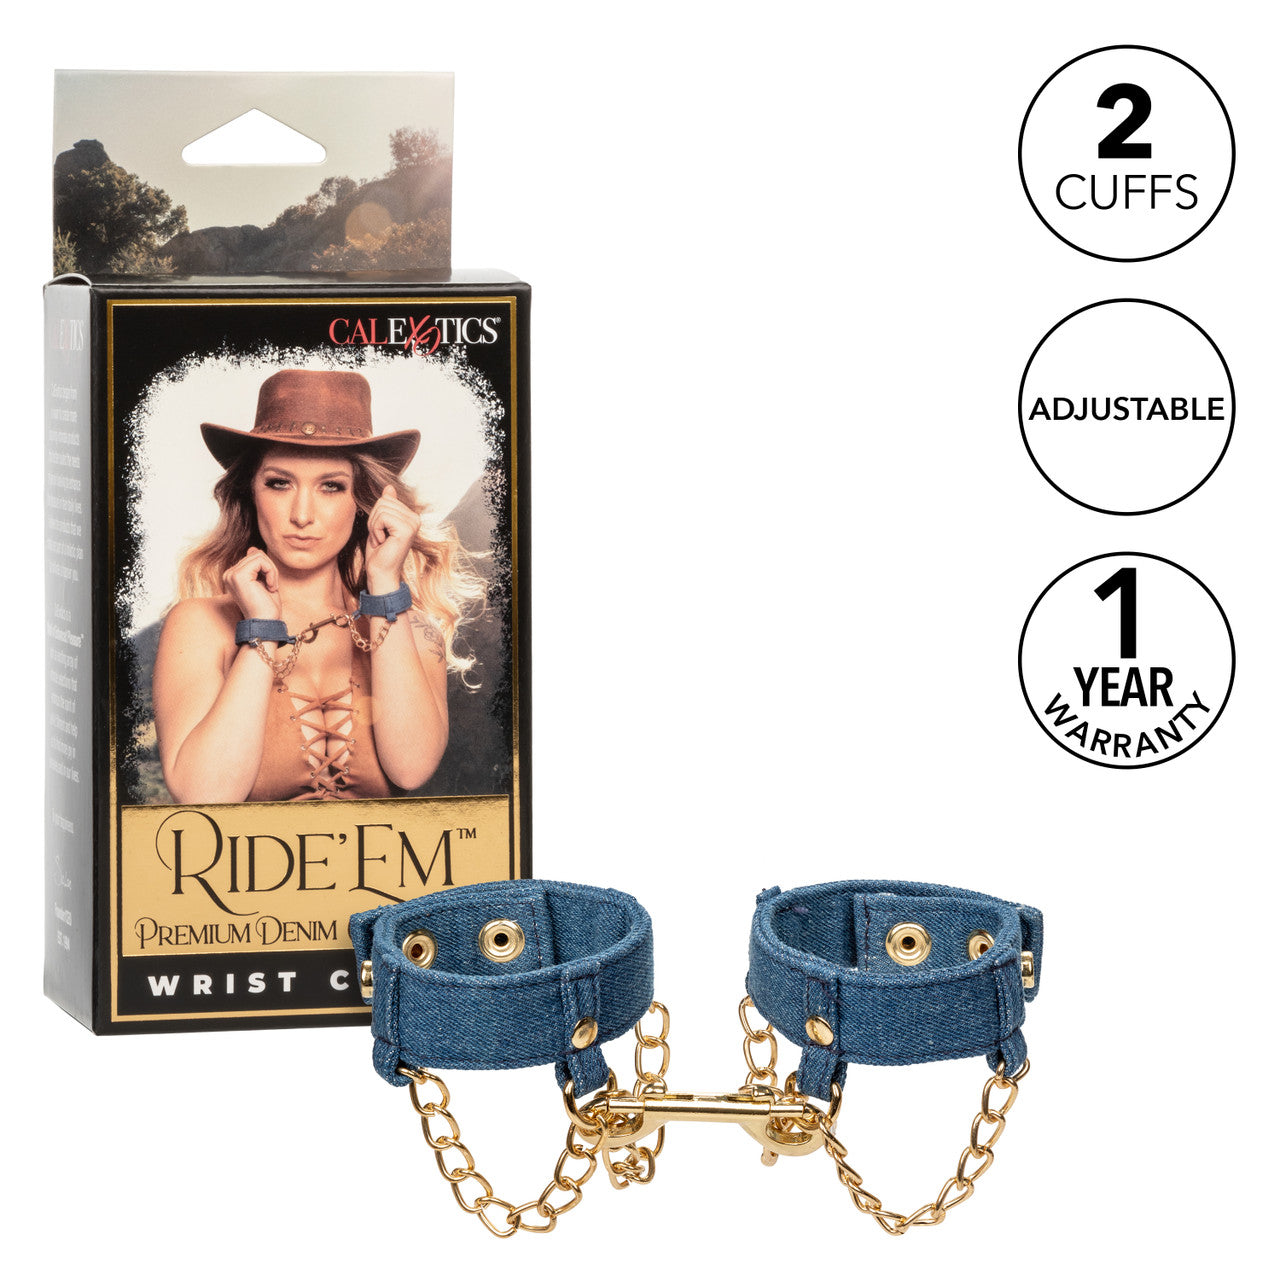 Ride 'Em Premium Denim Collection Wrist Cuffs